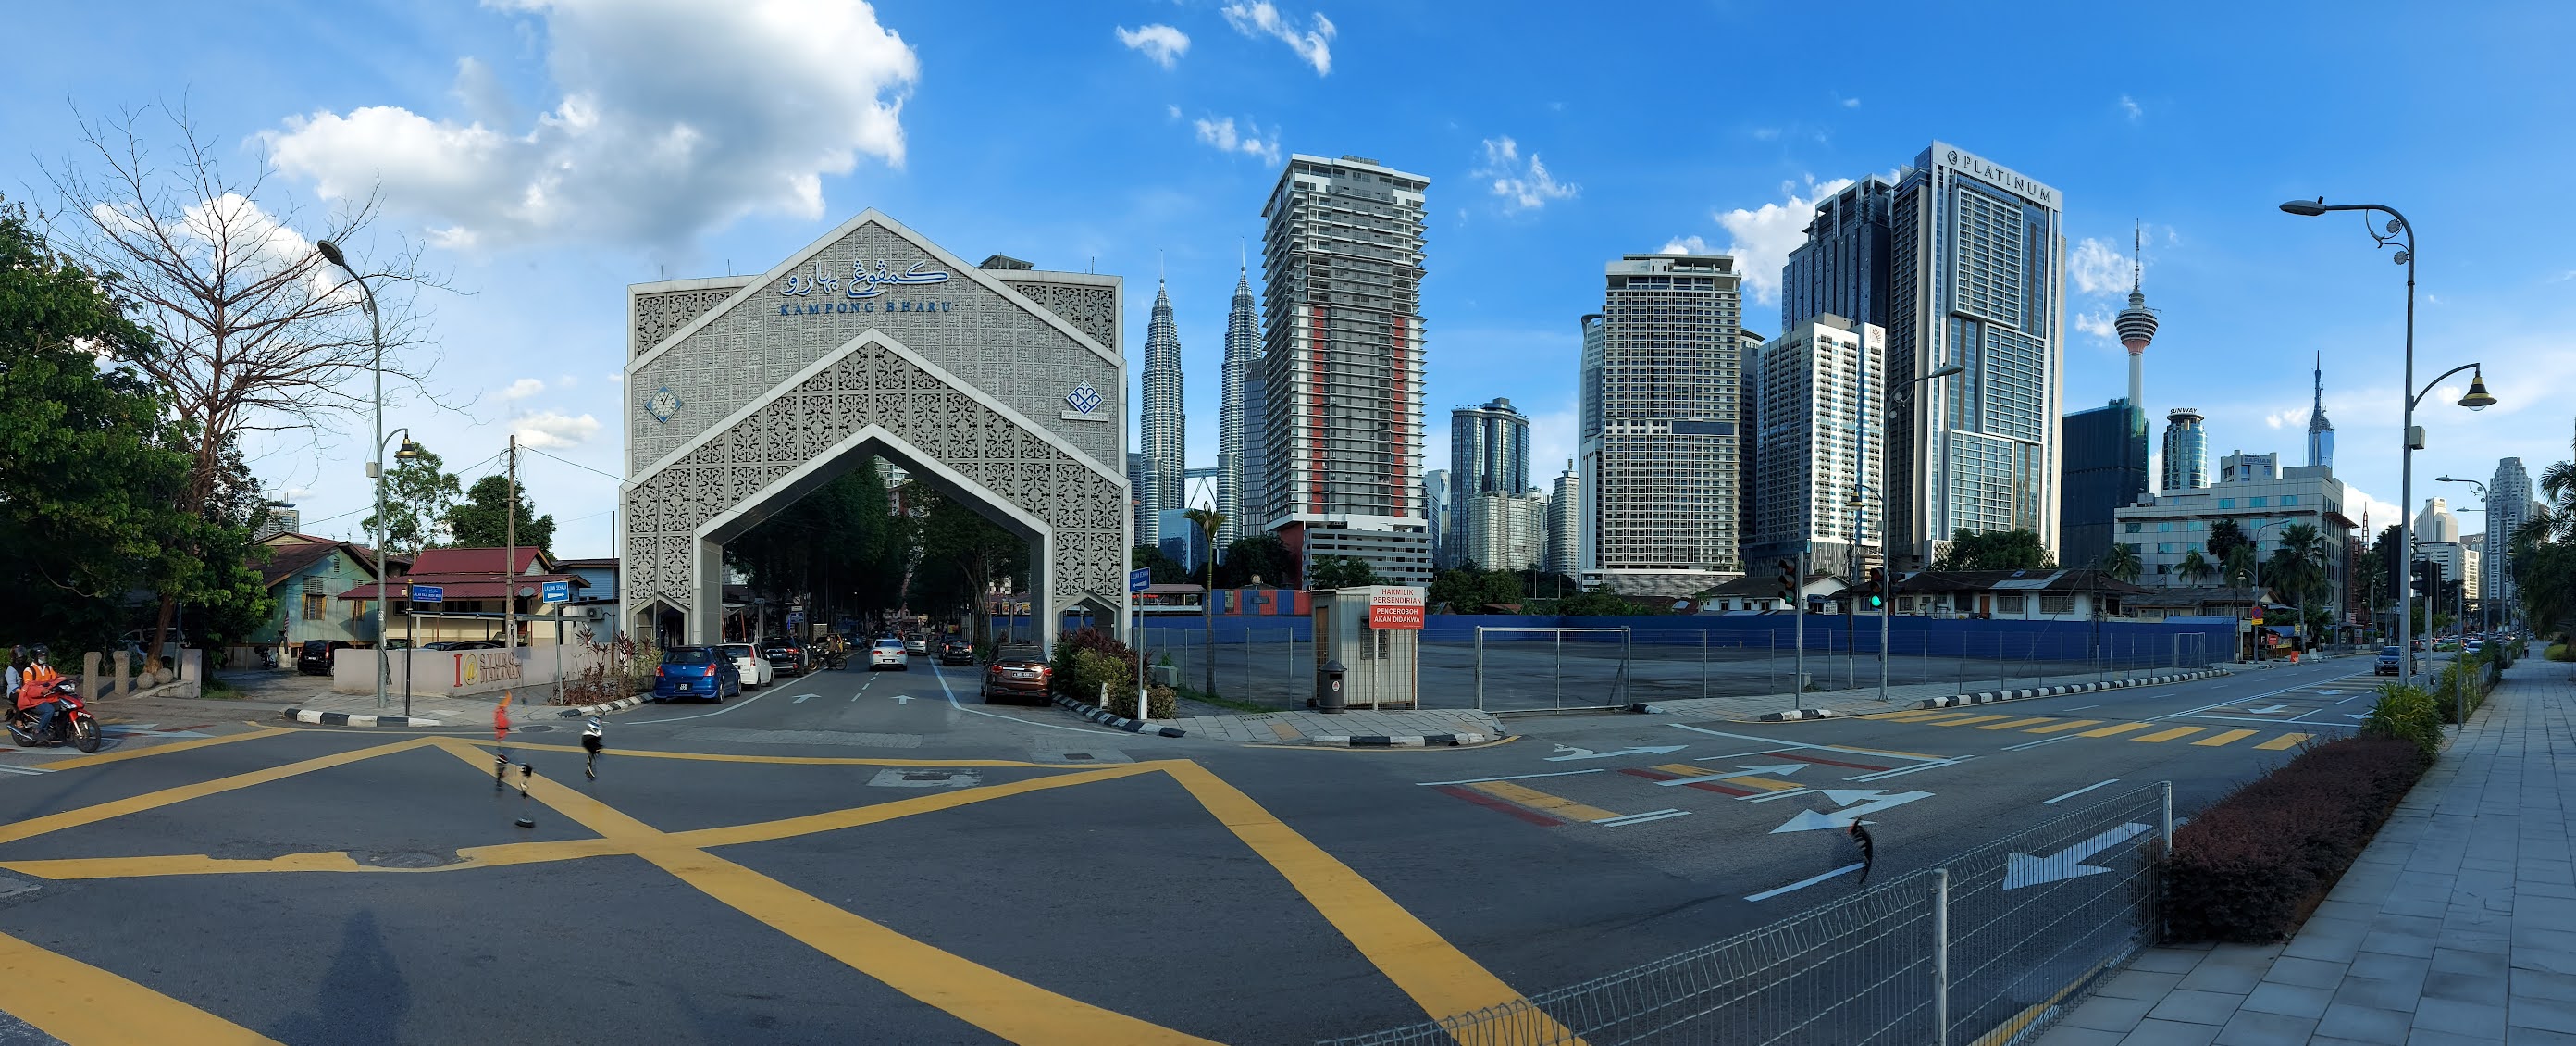 Jalan-Jalan ke Kampung Baru, Kuala Lumpur |MyRokan